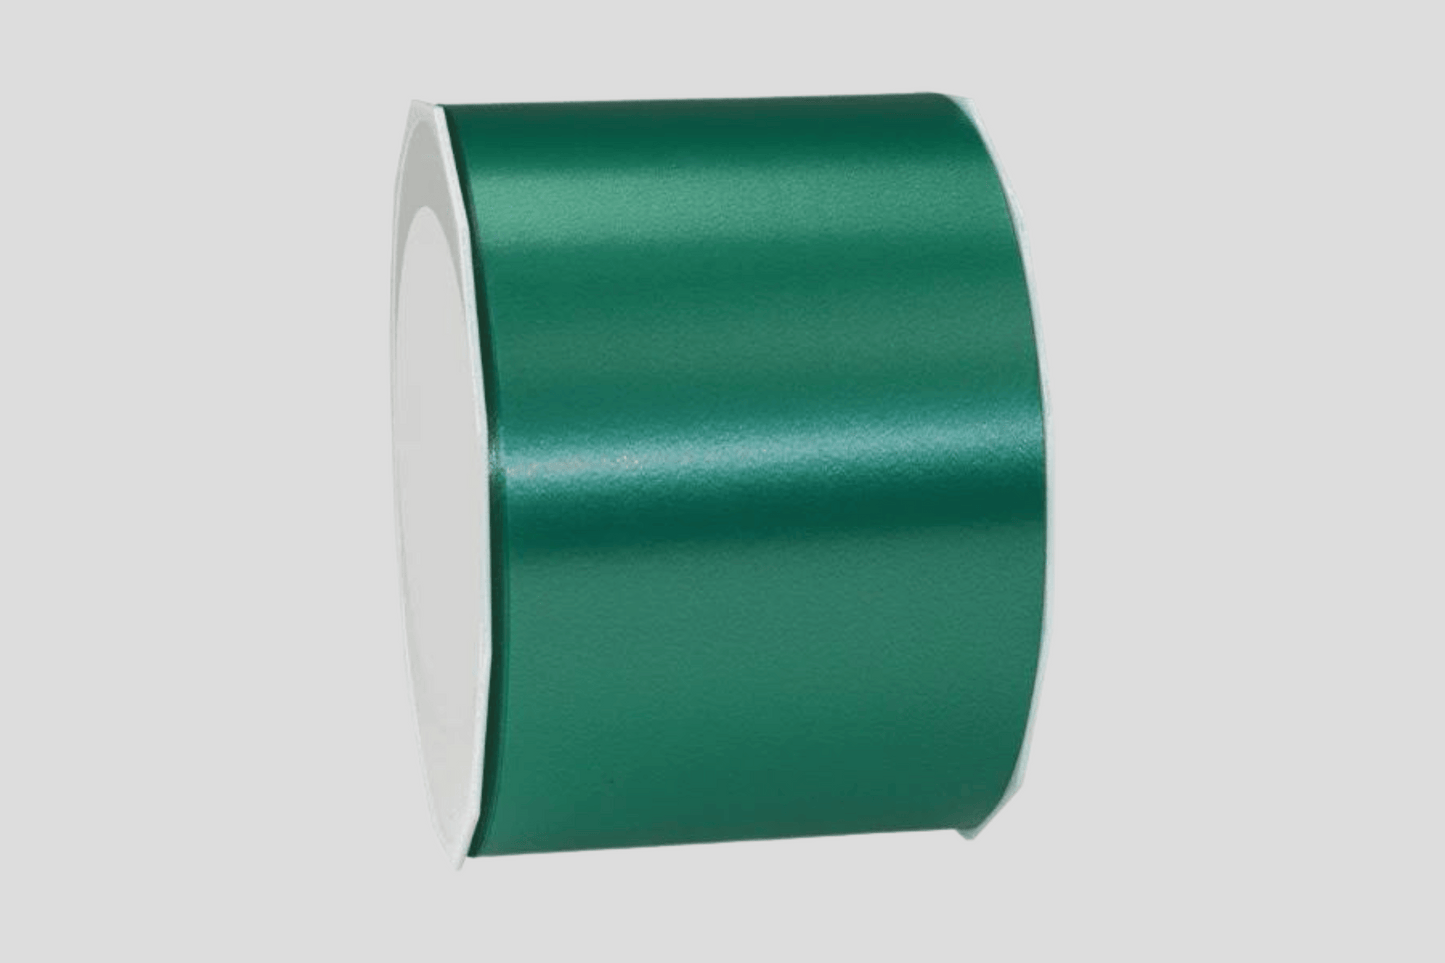 Rubans d'inauguration colorés sans ruban imprimé bande jm ch green